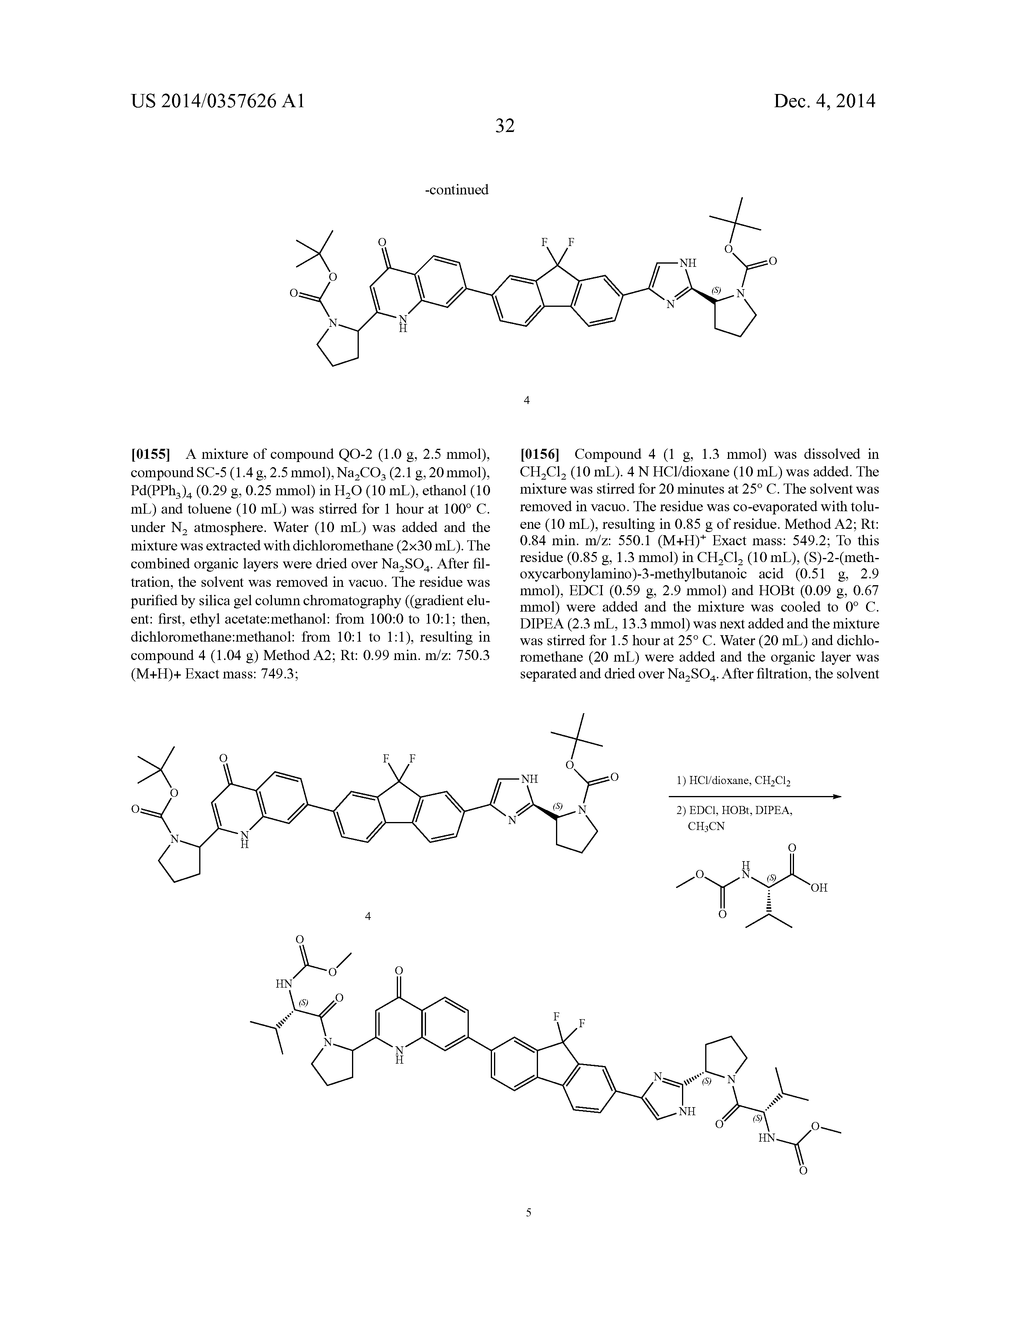 Hetero-Bicyclic Derivatives As HCV Inhibitors - diagram, schematic, and image 33